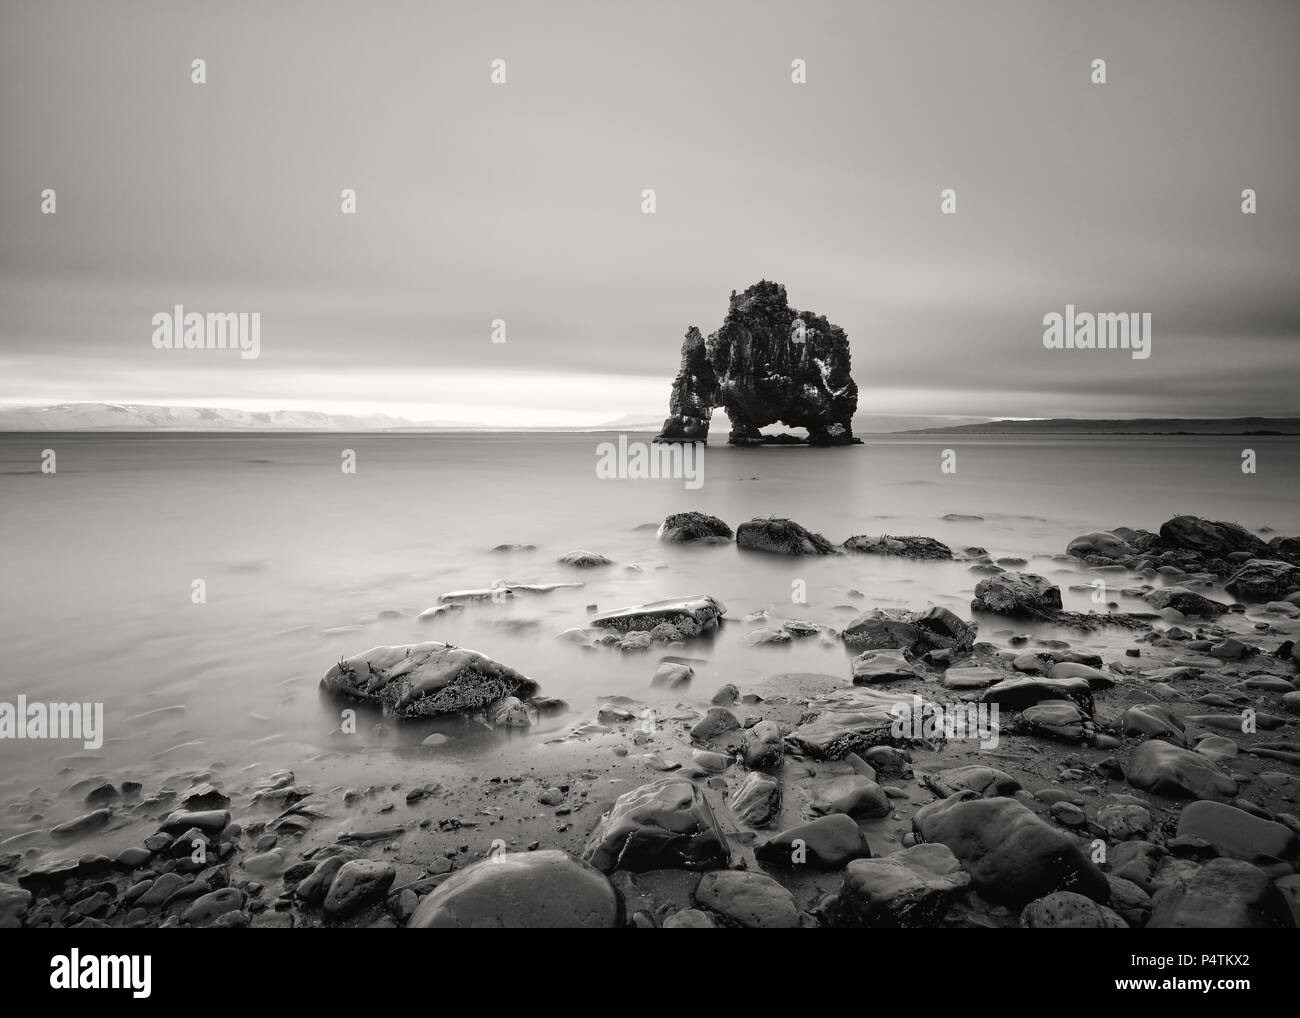 Vista panorámica de una impresionante formación rocosa en aguas poco profundas en una playa con piedras - Ubicación: Islandia, en la costa oriental de la península Vatnsnes en el Nort Foto de stock